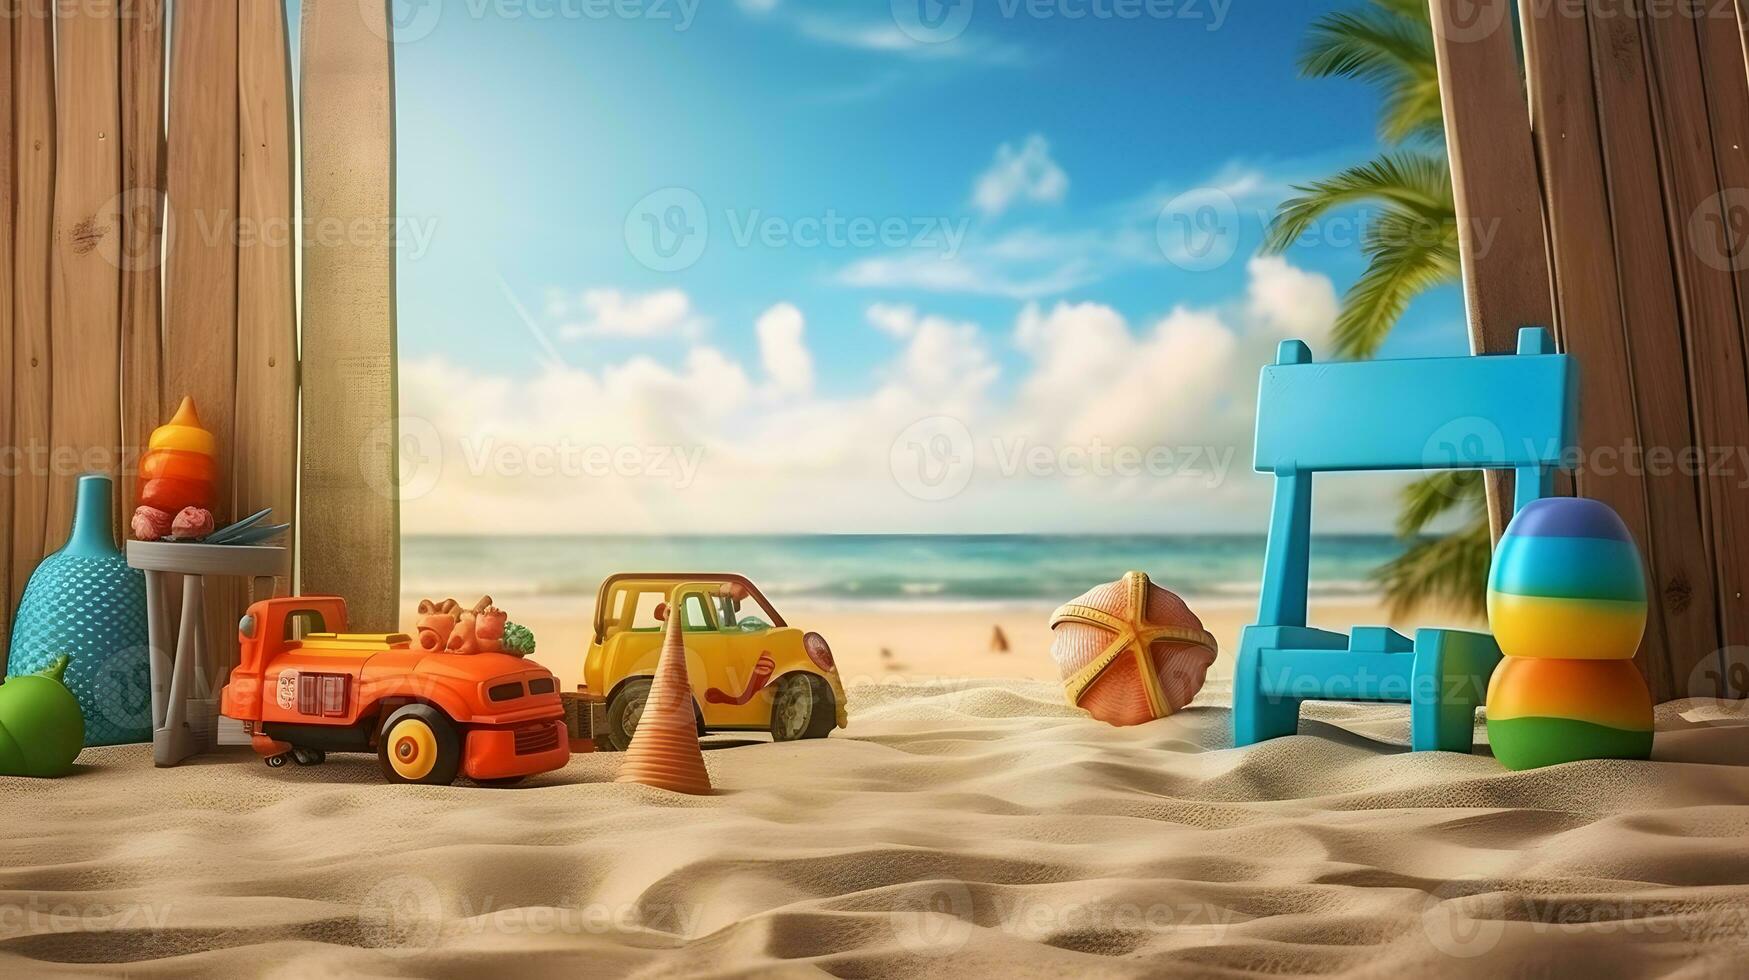 carro em a de praia com areia e brinquedos foto